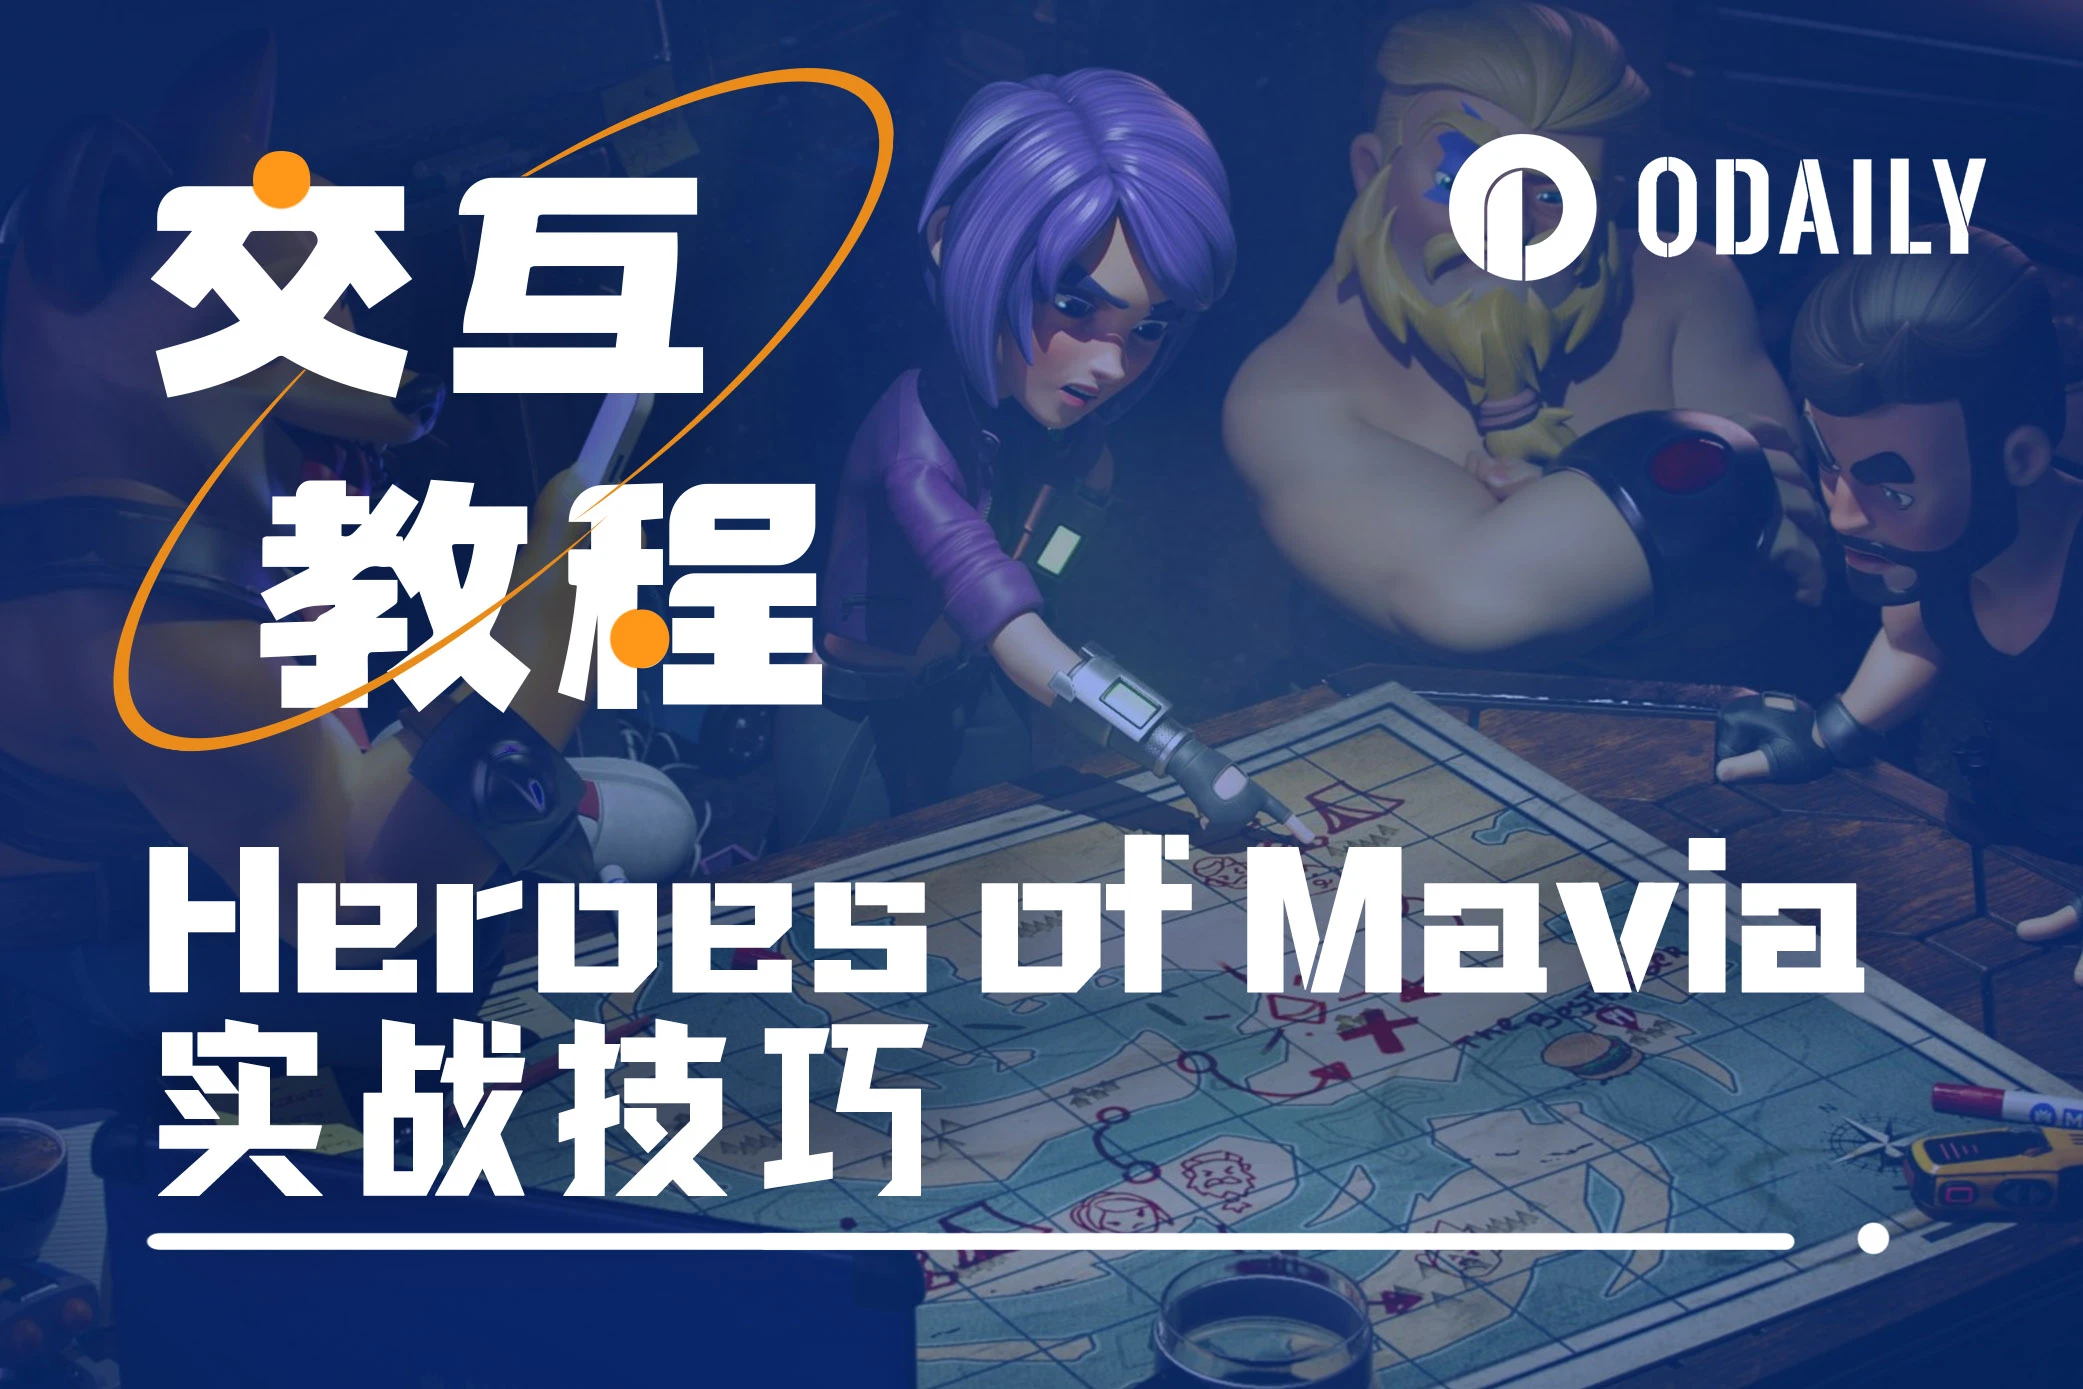 实战经验分享，带你速通链游Heroes of Mavia「GameFi猎手」